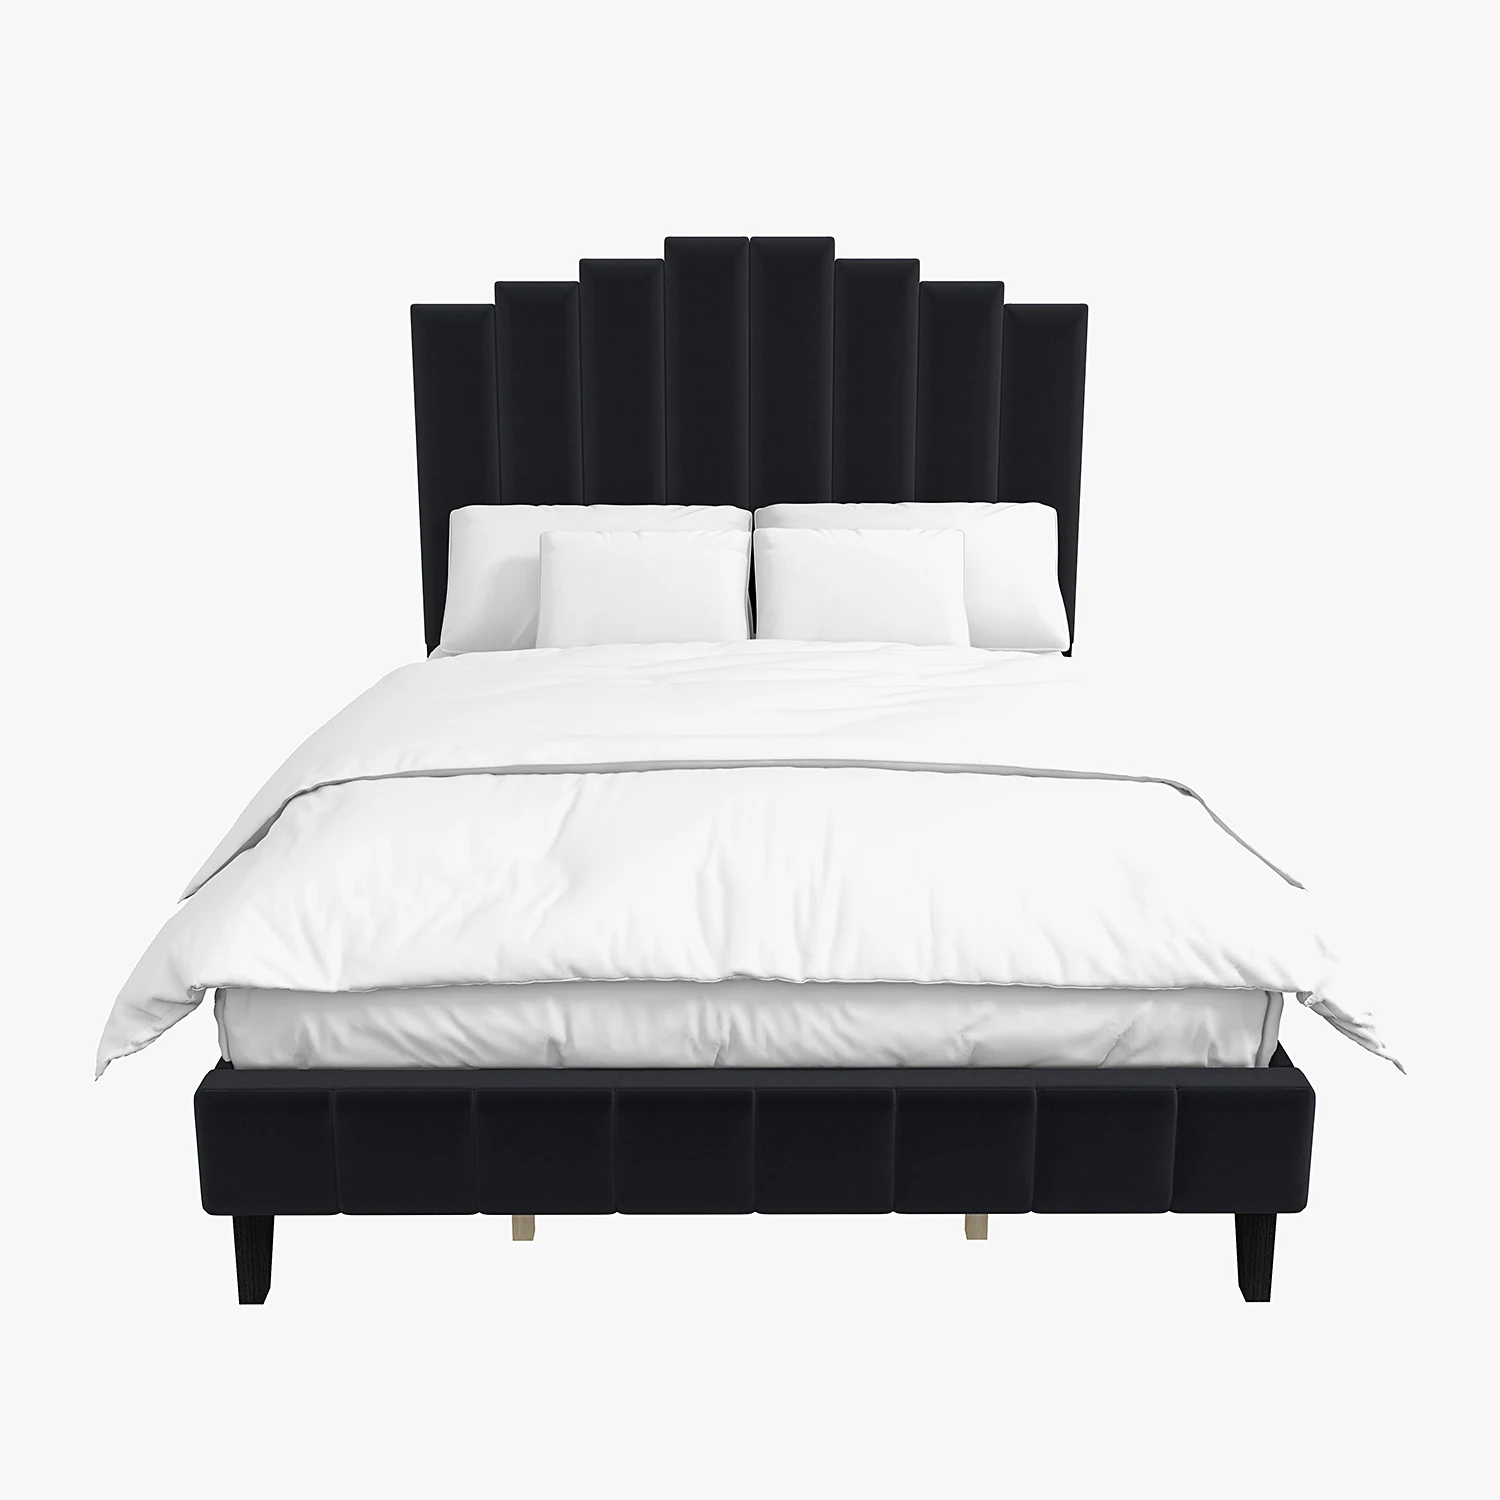 Кровать-платформа с мягкой обивкой Pharsalia с изголовьем и изножьем размера King / Queen Size